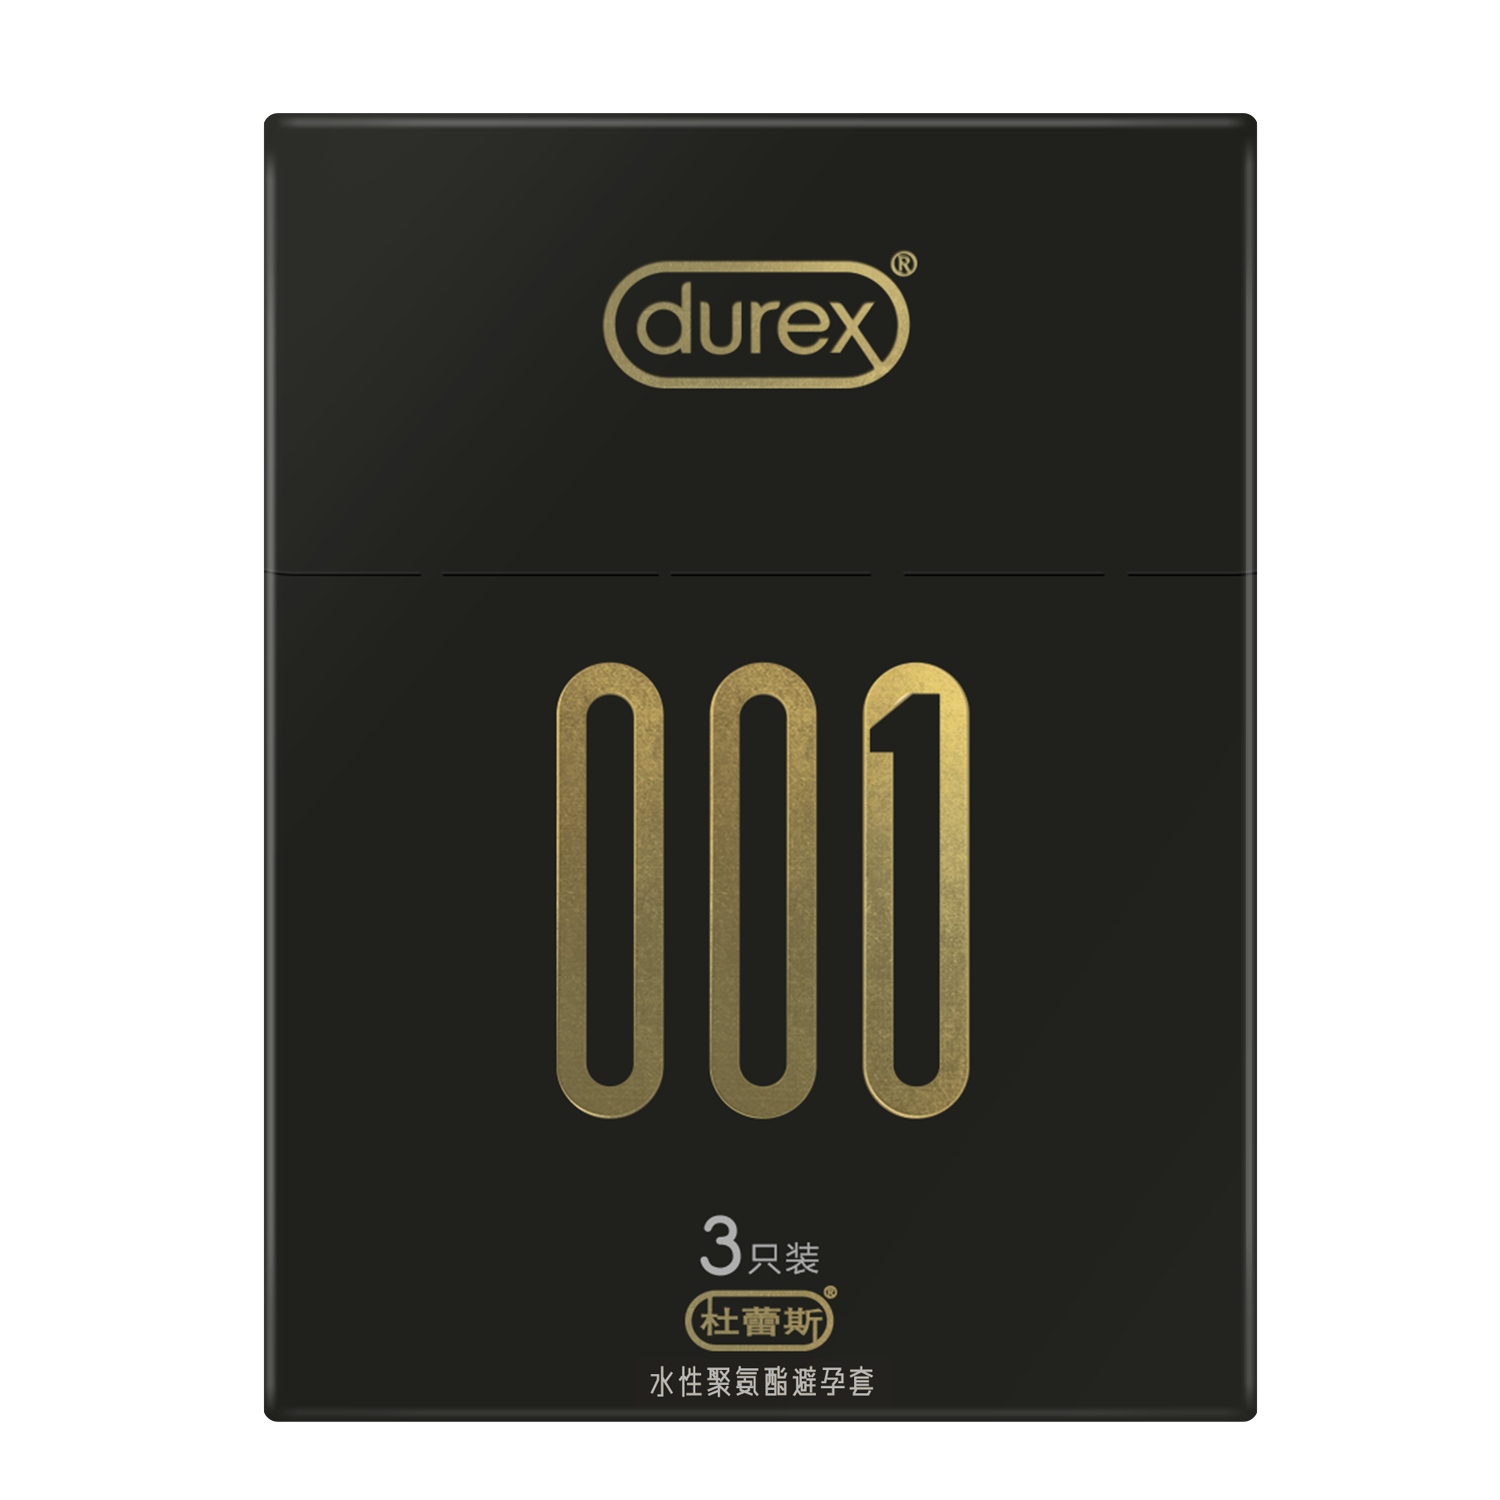 杜蕾斯避孕套 超薄装情趣型阴蒂刺激持久安全套100只装旗舰店官方 - 小轩窗